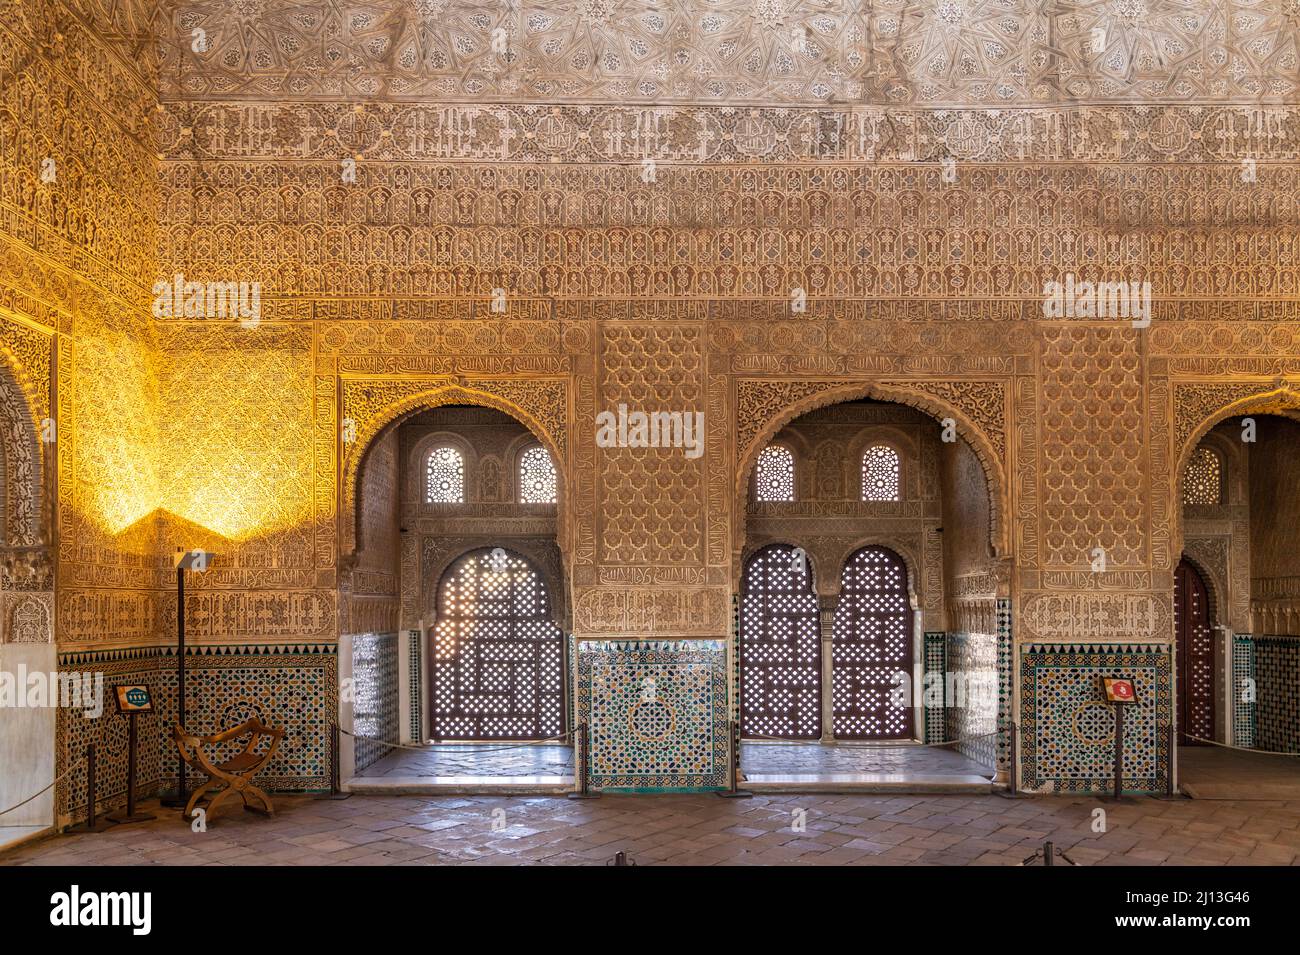 Innenraum der Nasridenpaläste, Welterbe Alhambra a Granada, Andalusia, Spanien | palazzi Nasrid interni, patrimonio mondiale dell'Alhambra a Granada, Anda Foto Stock